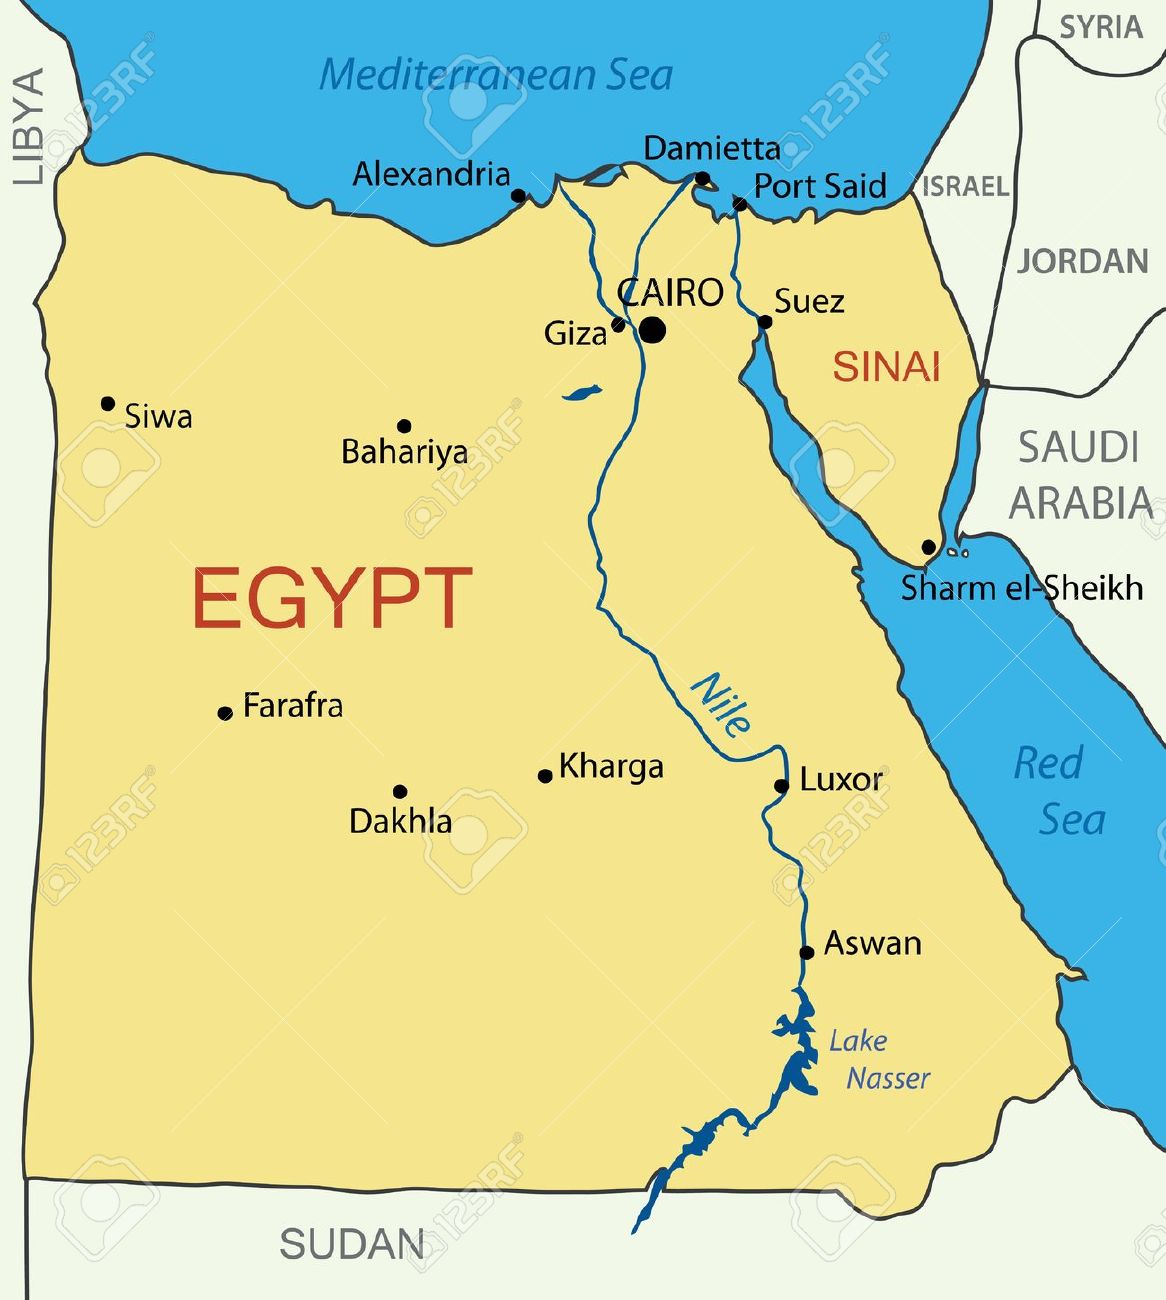 Las Pirámides y Crucero por el Nilo.